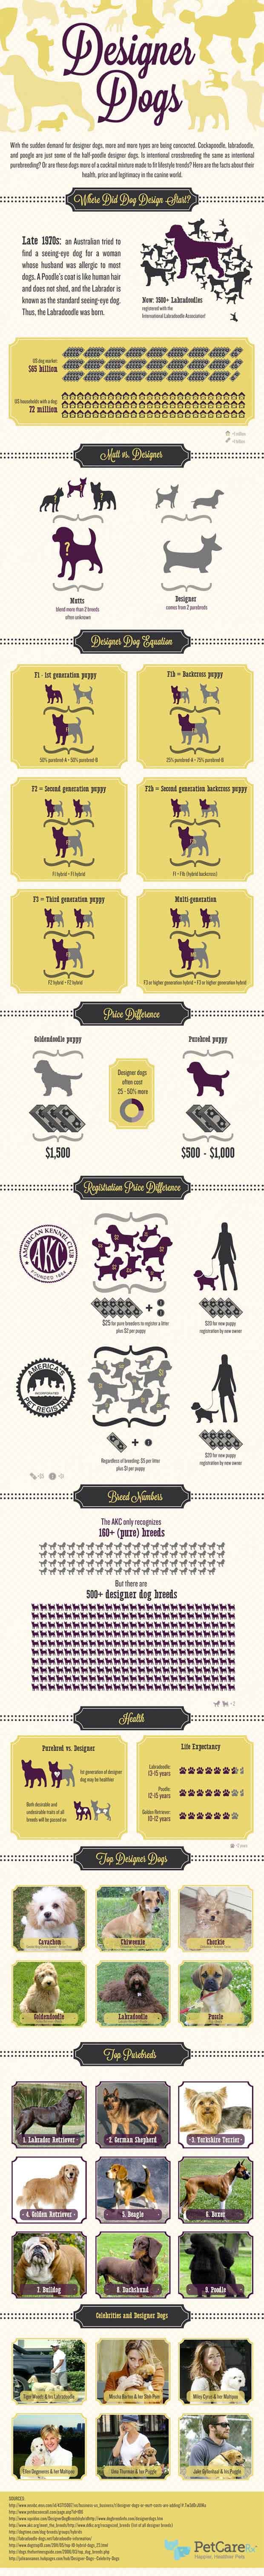 popular-designer-dog-breeds-infographic